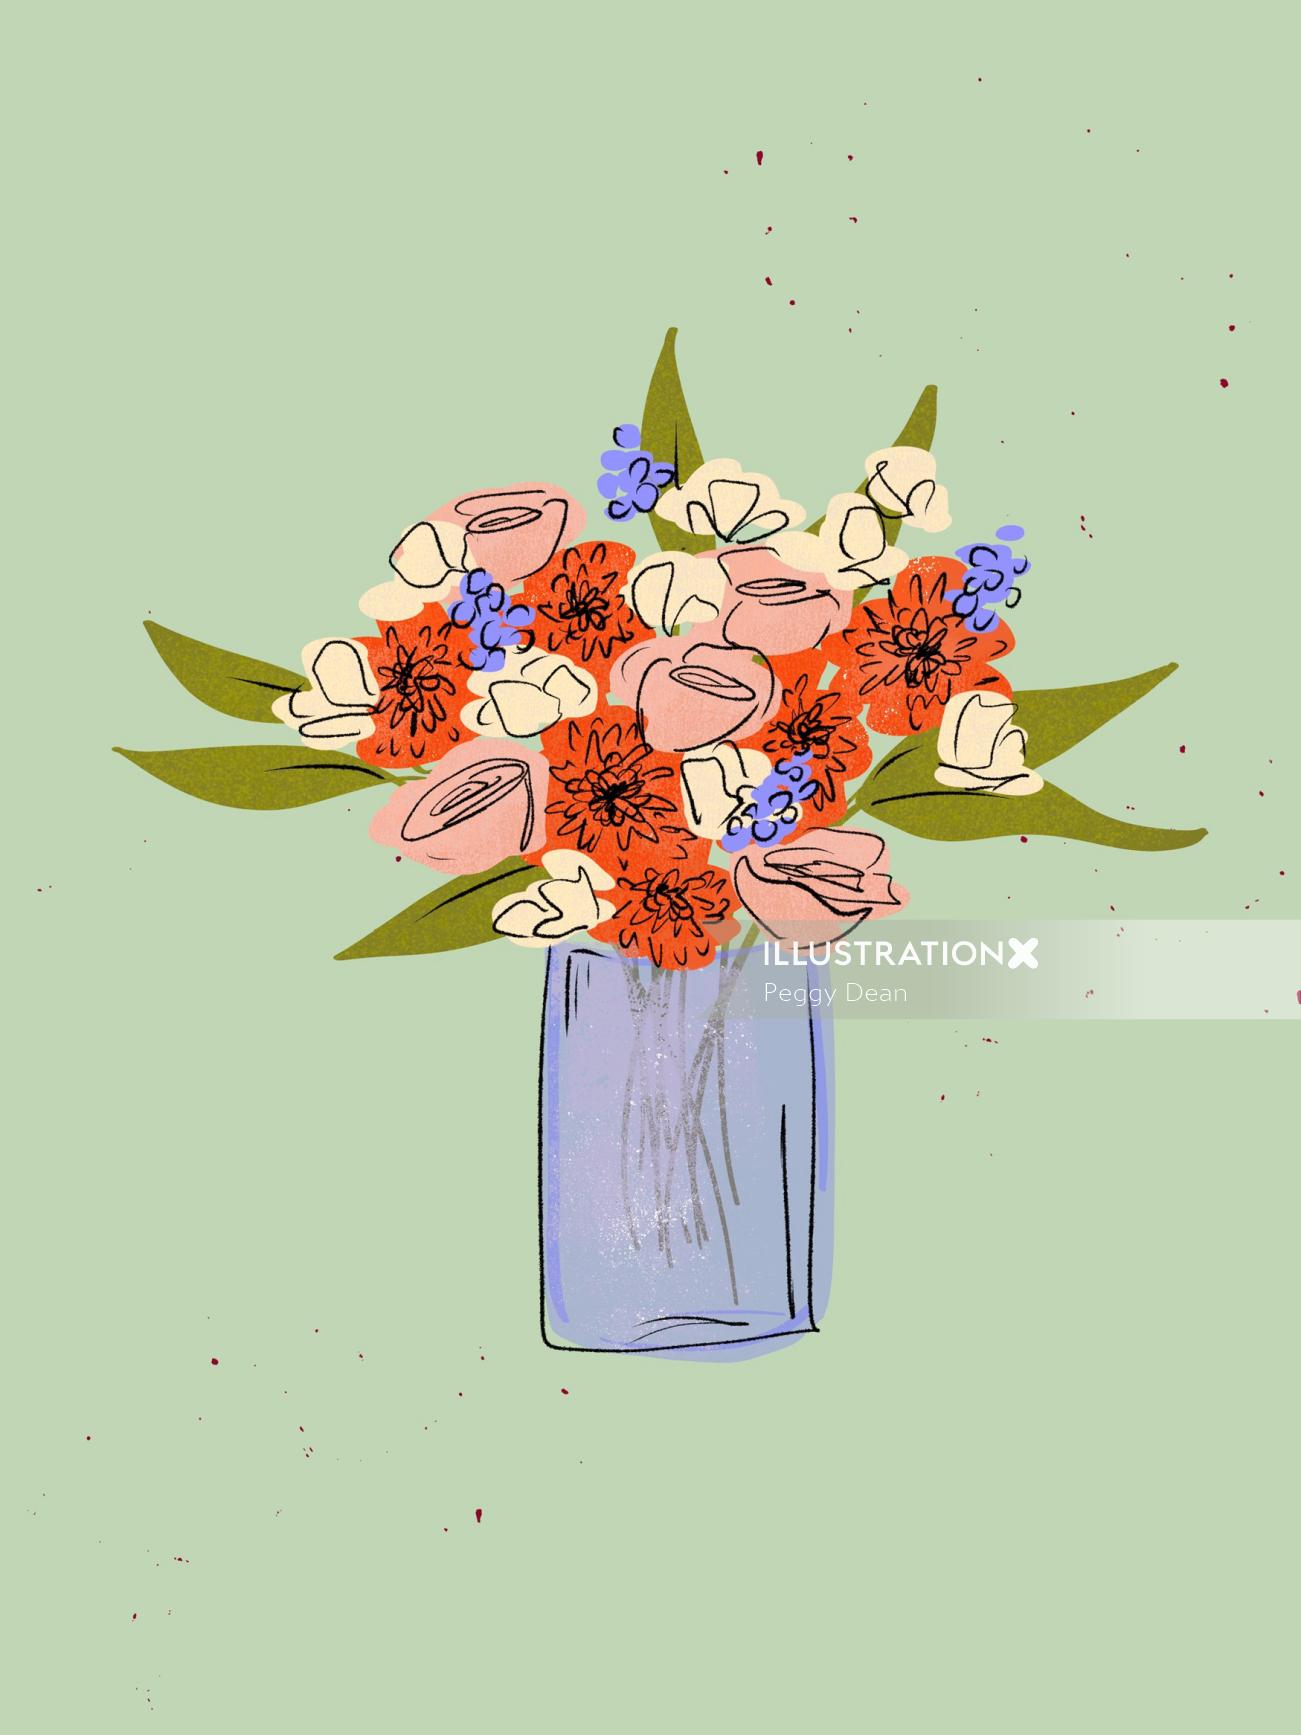 Graphic flower vase